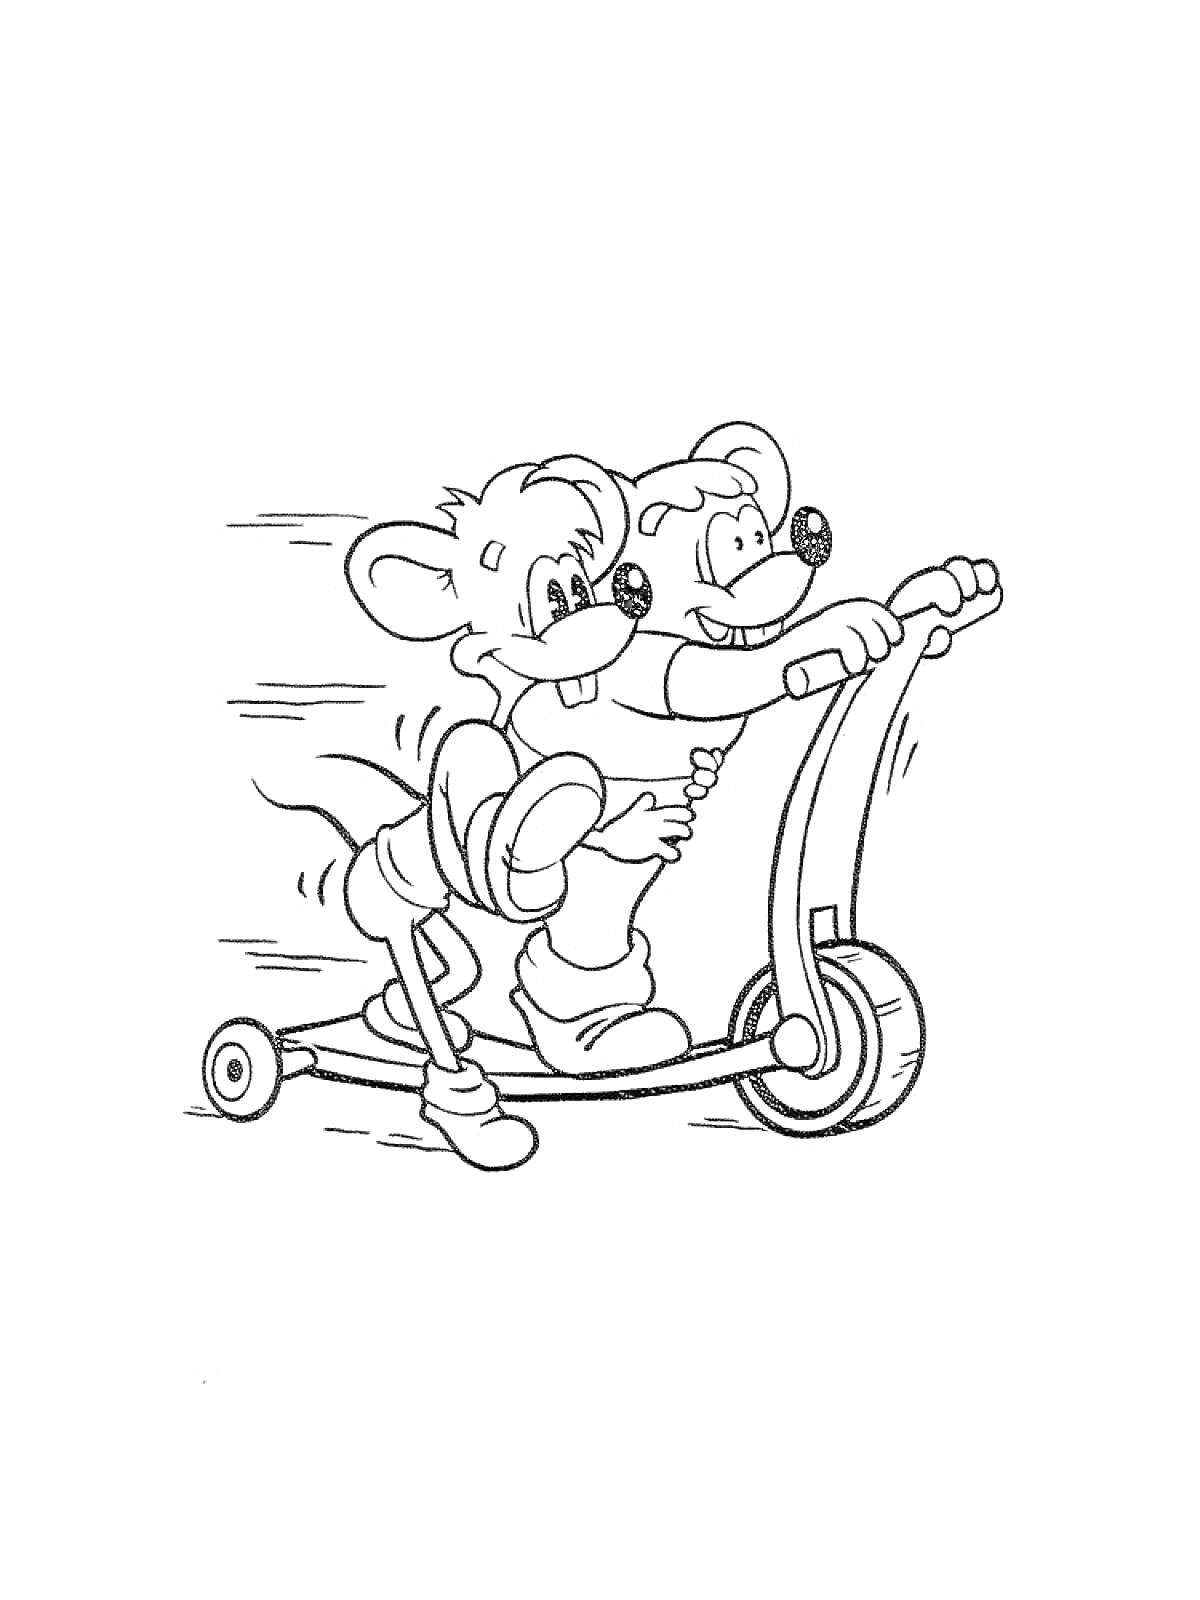 Раскраска Две мультяшные мыши едут на самокате